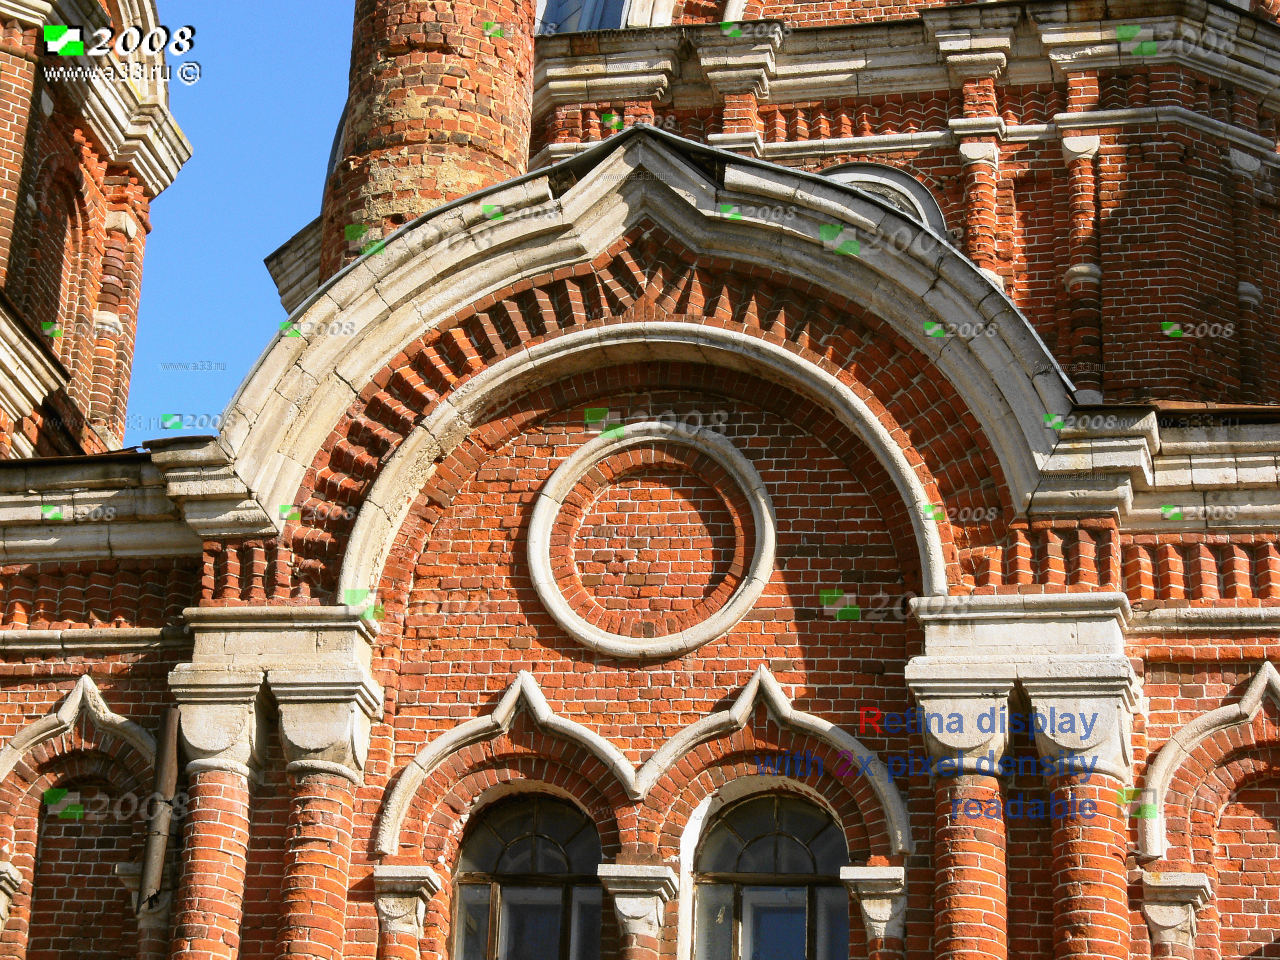 Фрагмент фасада Спасо-Преображенского собора в Коврове Владимирской области в неовизантийском стиле с использованием местных материалов - красного кирпича с белокаменными вставками